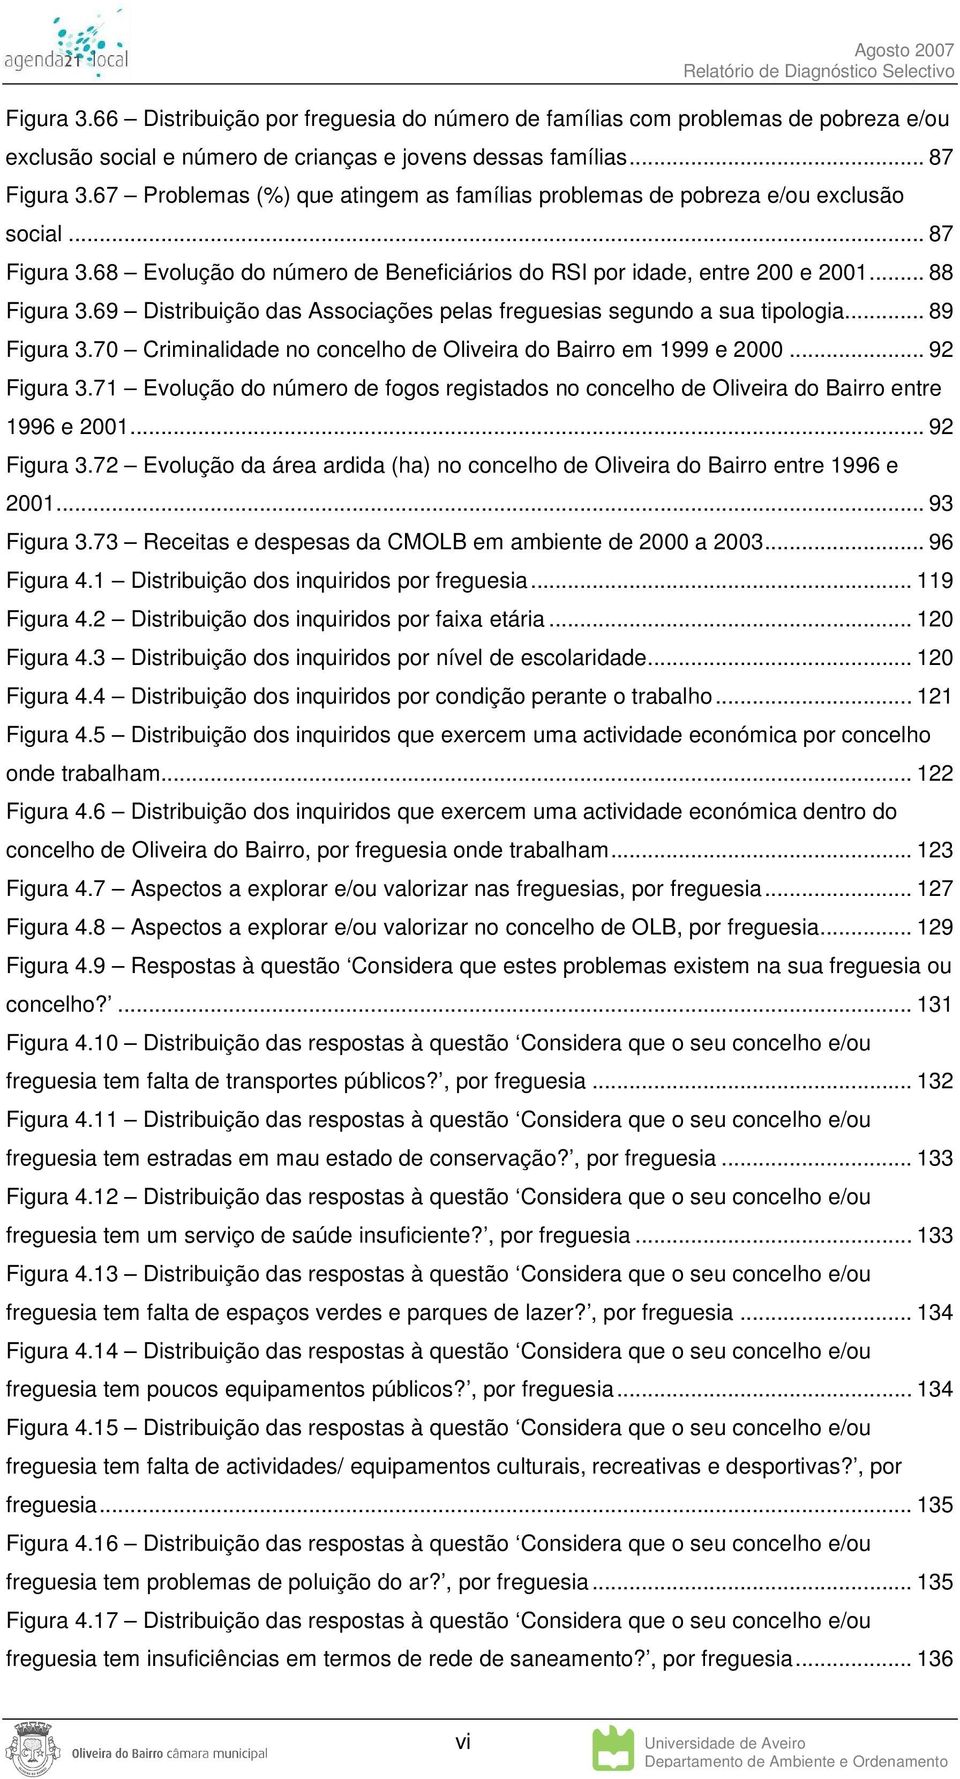 69 Distribuição das Associações pelas freguesias segundo a sua tipologia... 89 Figura 3.70 Criminalidade no concelho de Oliveira do Bairro em 1999 e 2000... 92 Figura 3.